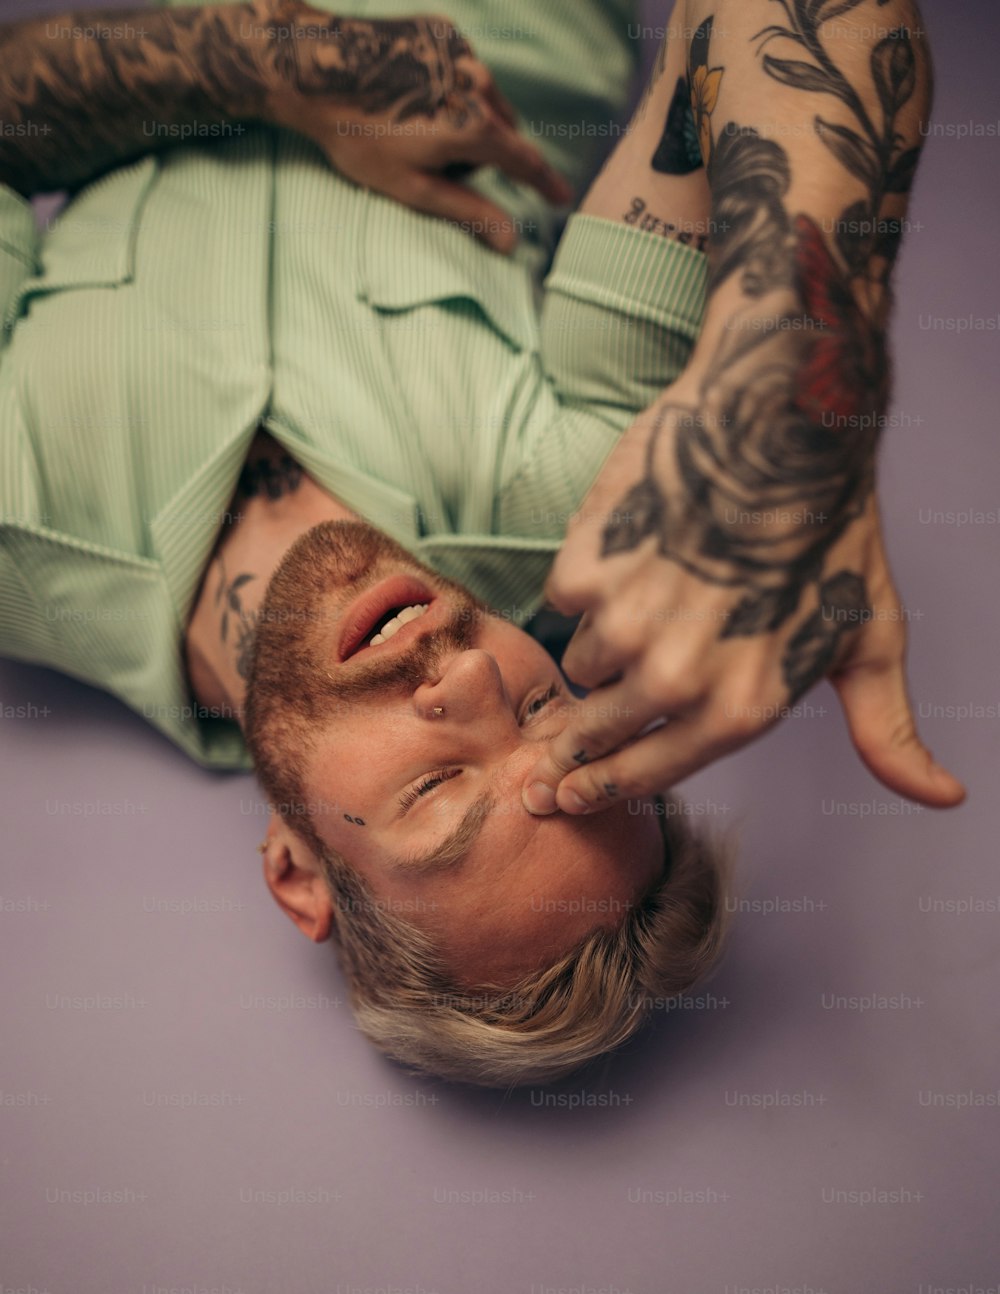 Un hombre con tatuajes tirado en el suelo